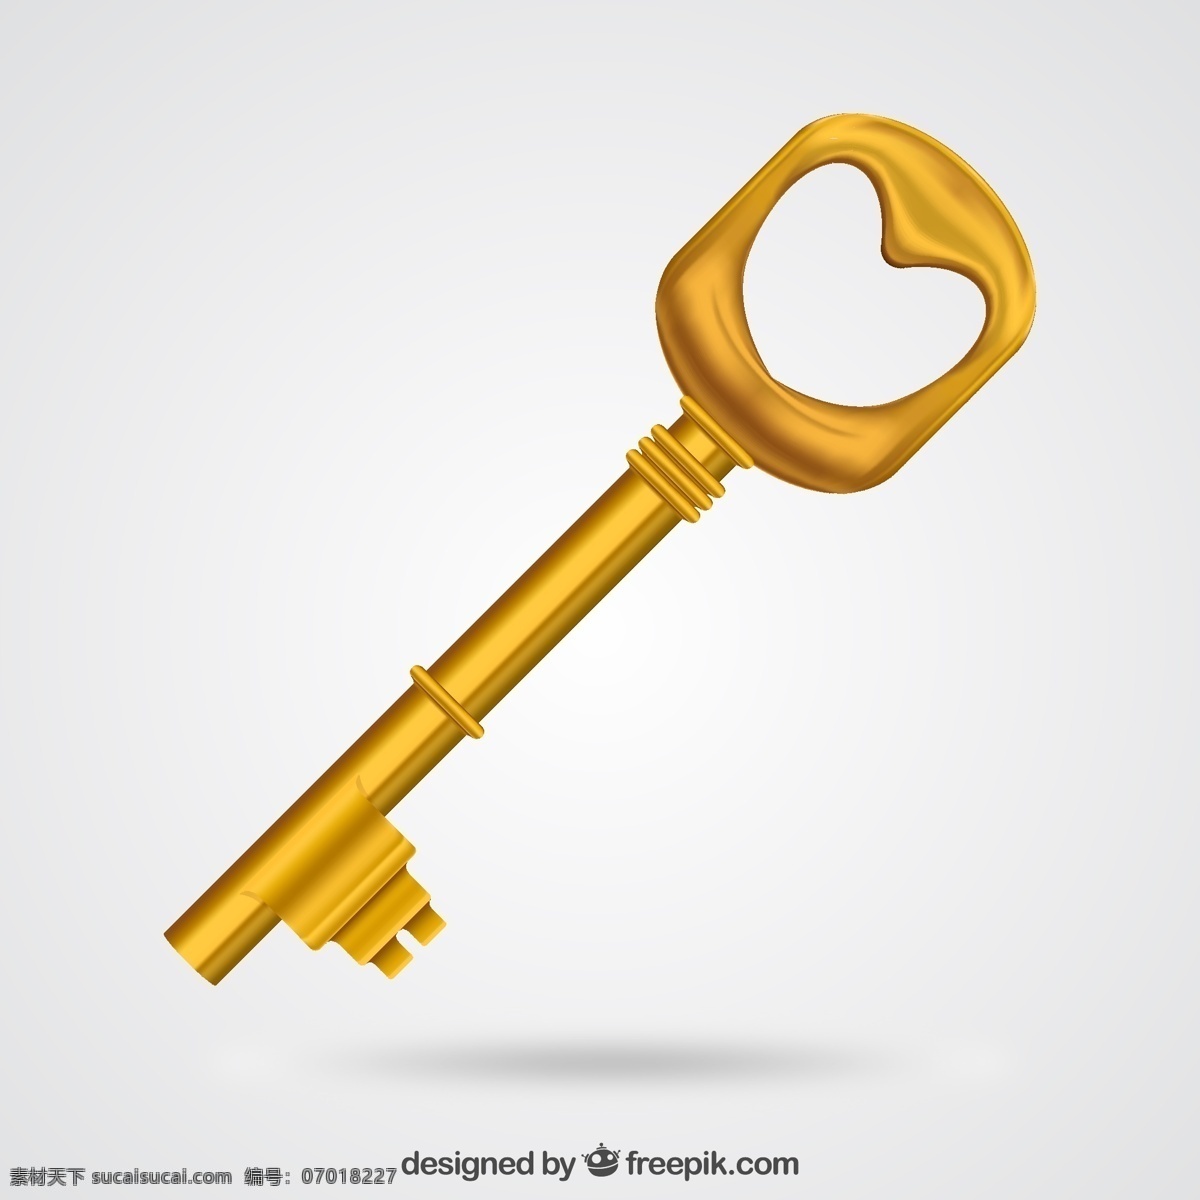 金色钥匙 金钥匙 爱心 金色 金属 钥匙 平面素材